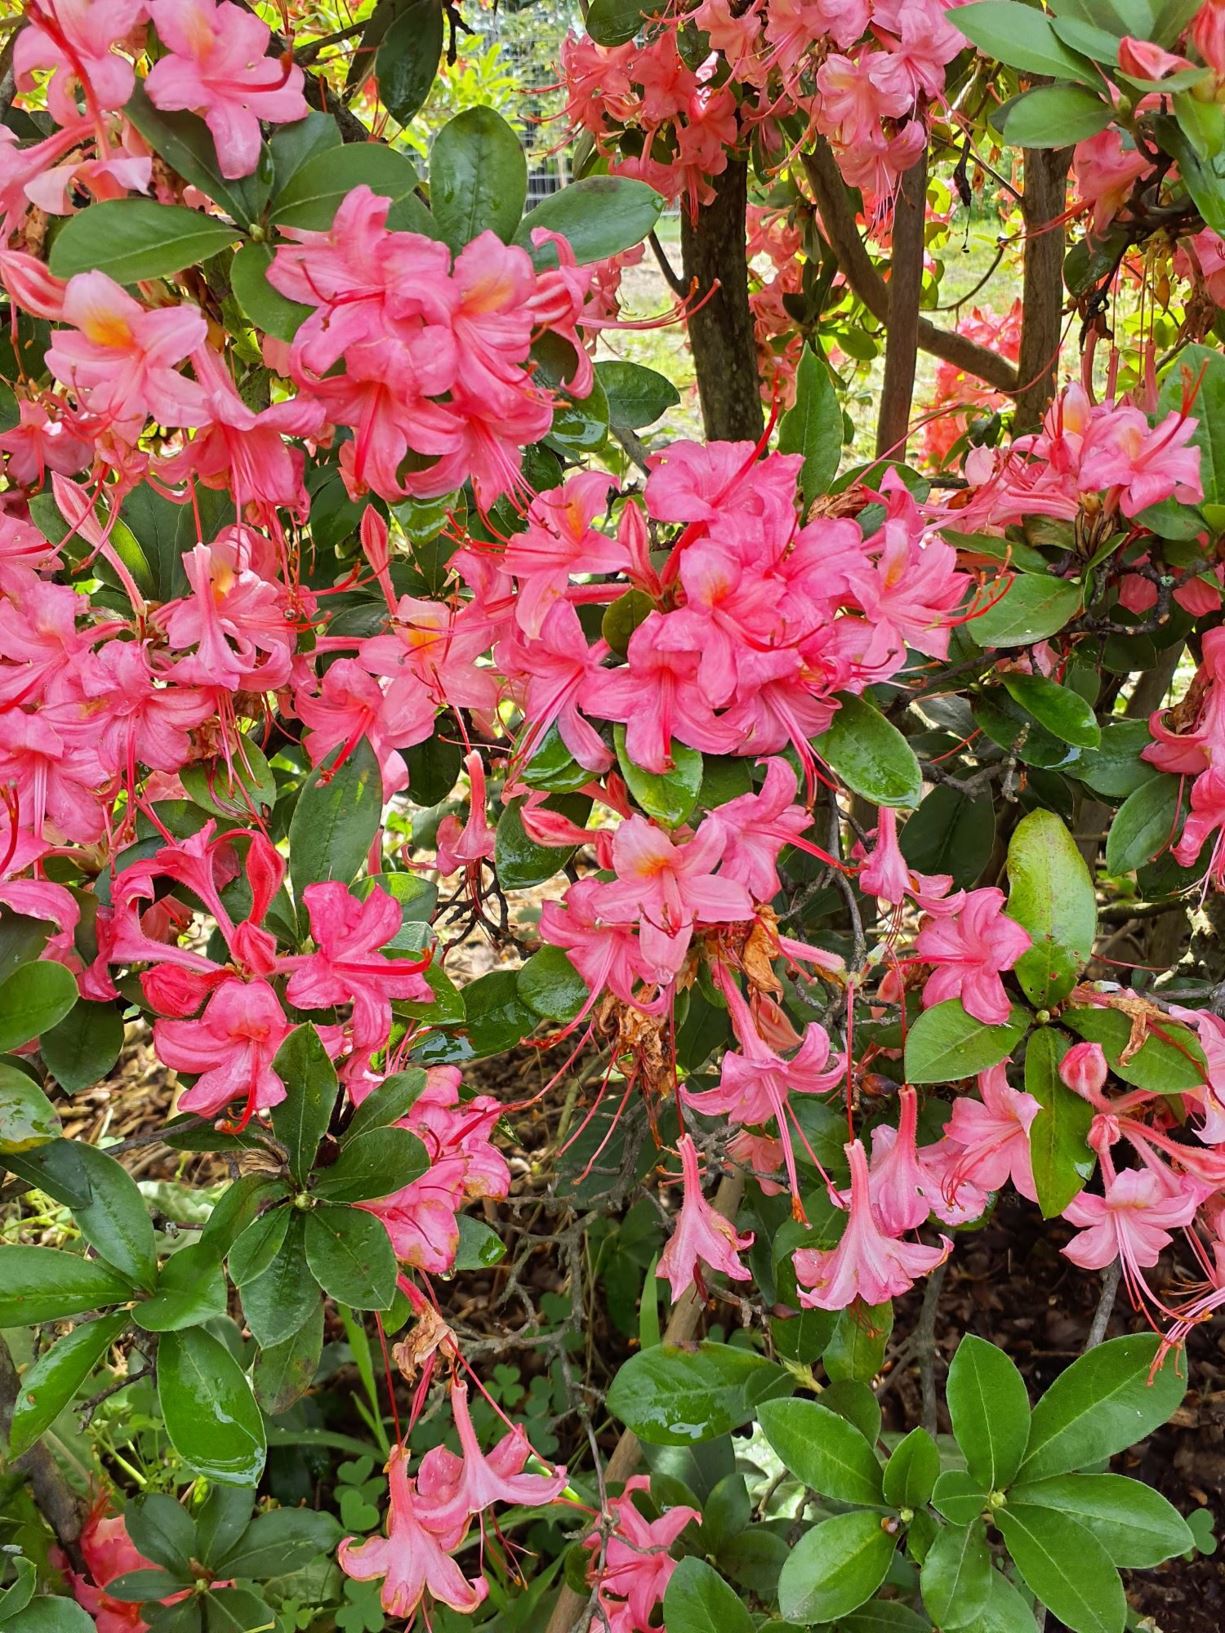 Rhododendron 'Weston's Parade' - Weston's Parade azalea